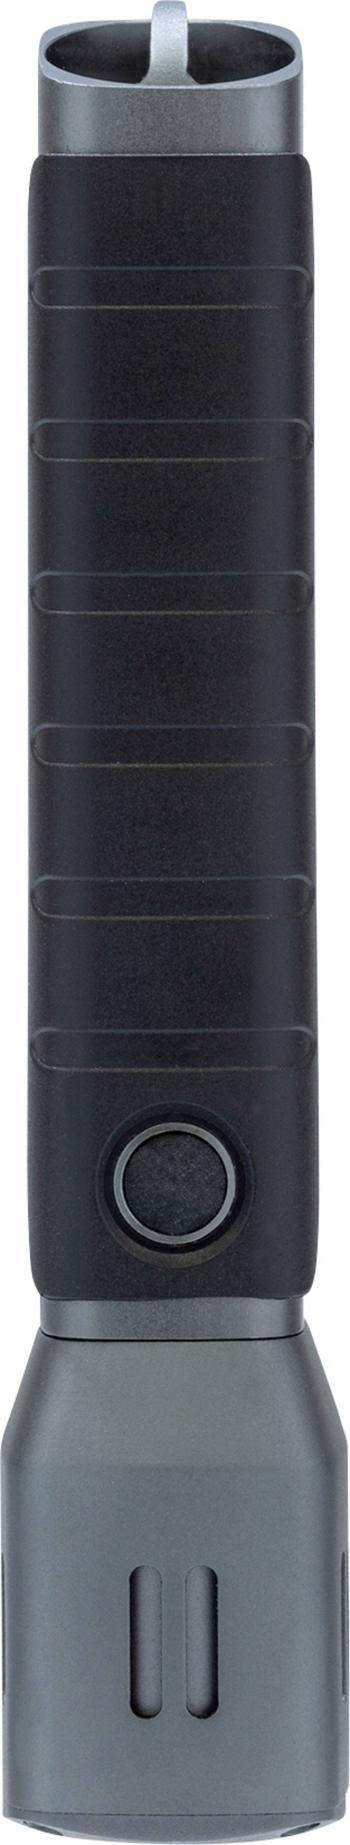 ABUS TL-517 LED  vreckové svietidlo (baterka)  na batérie 500 lm 4 h 195 g